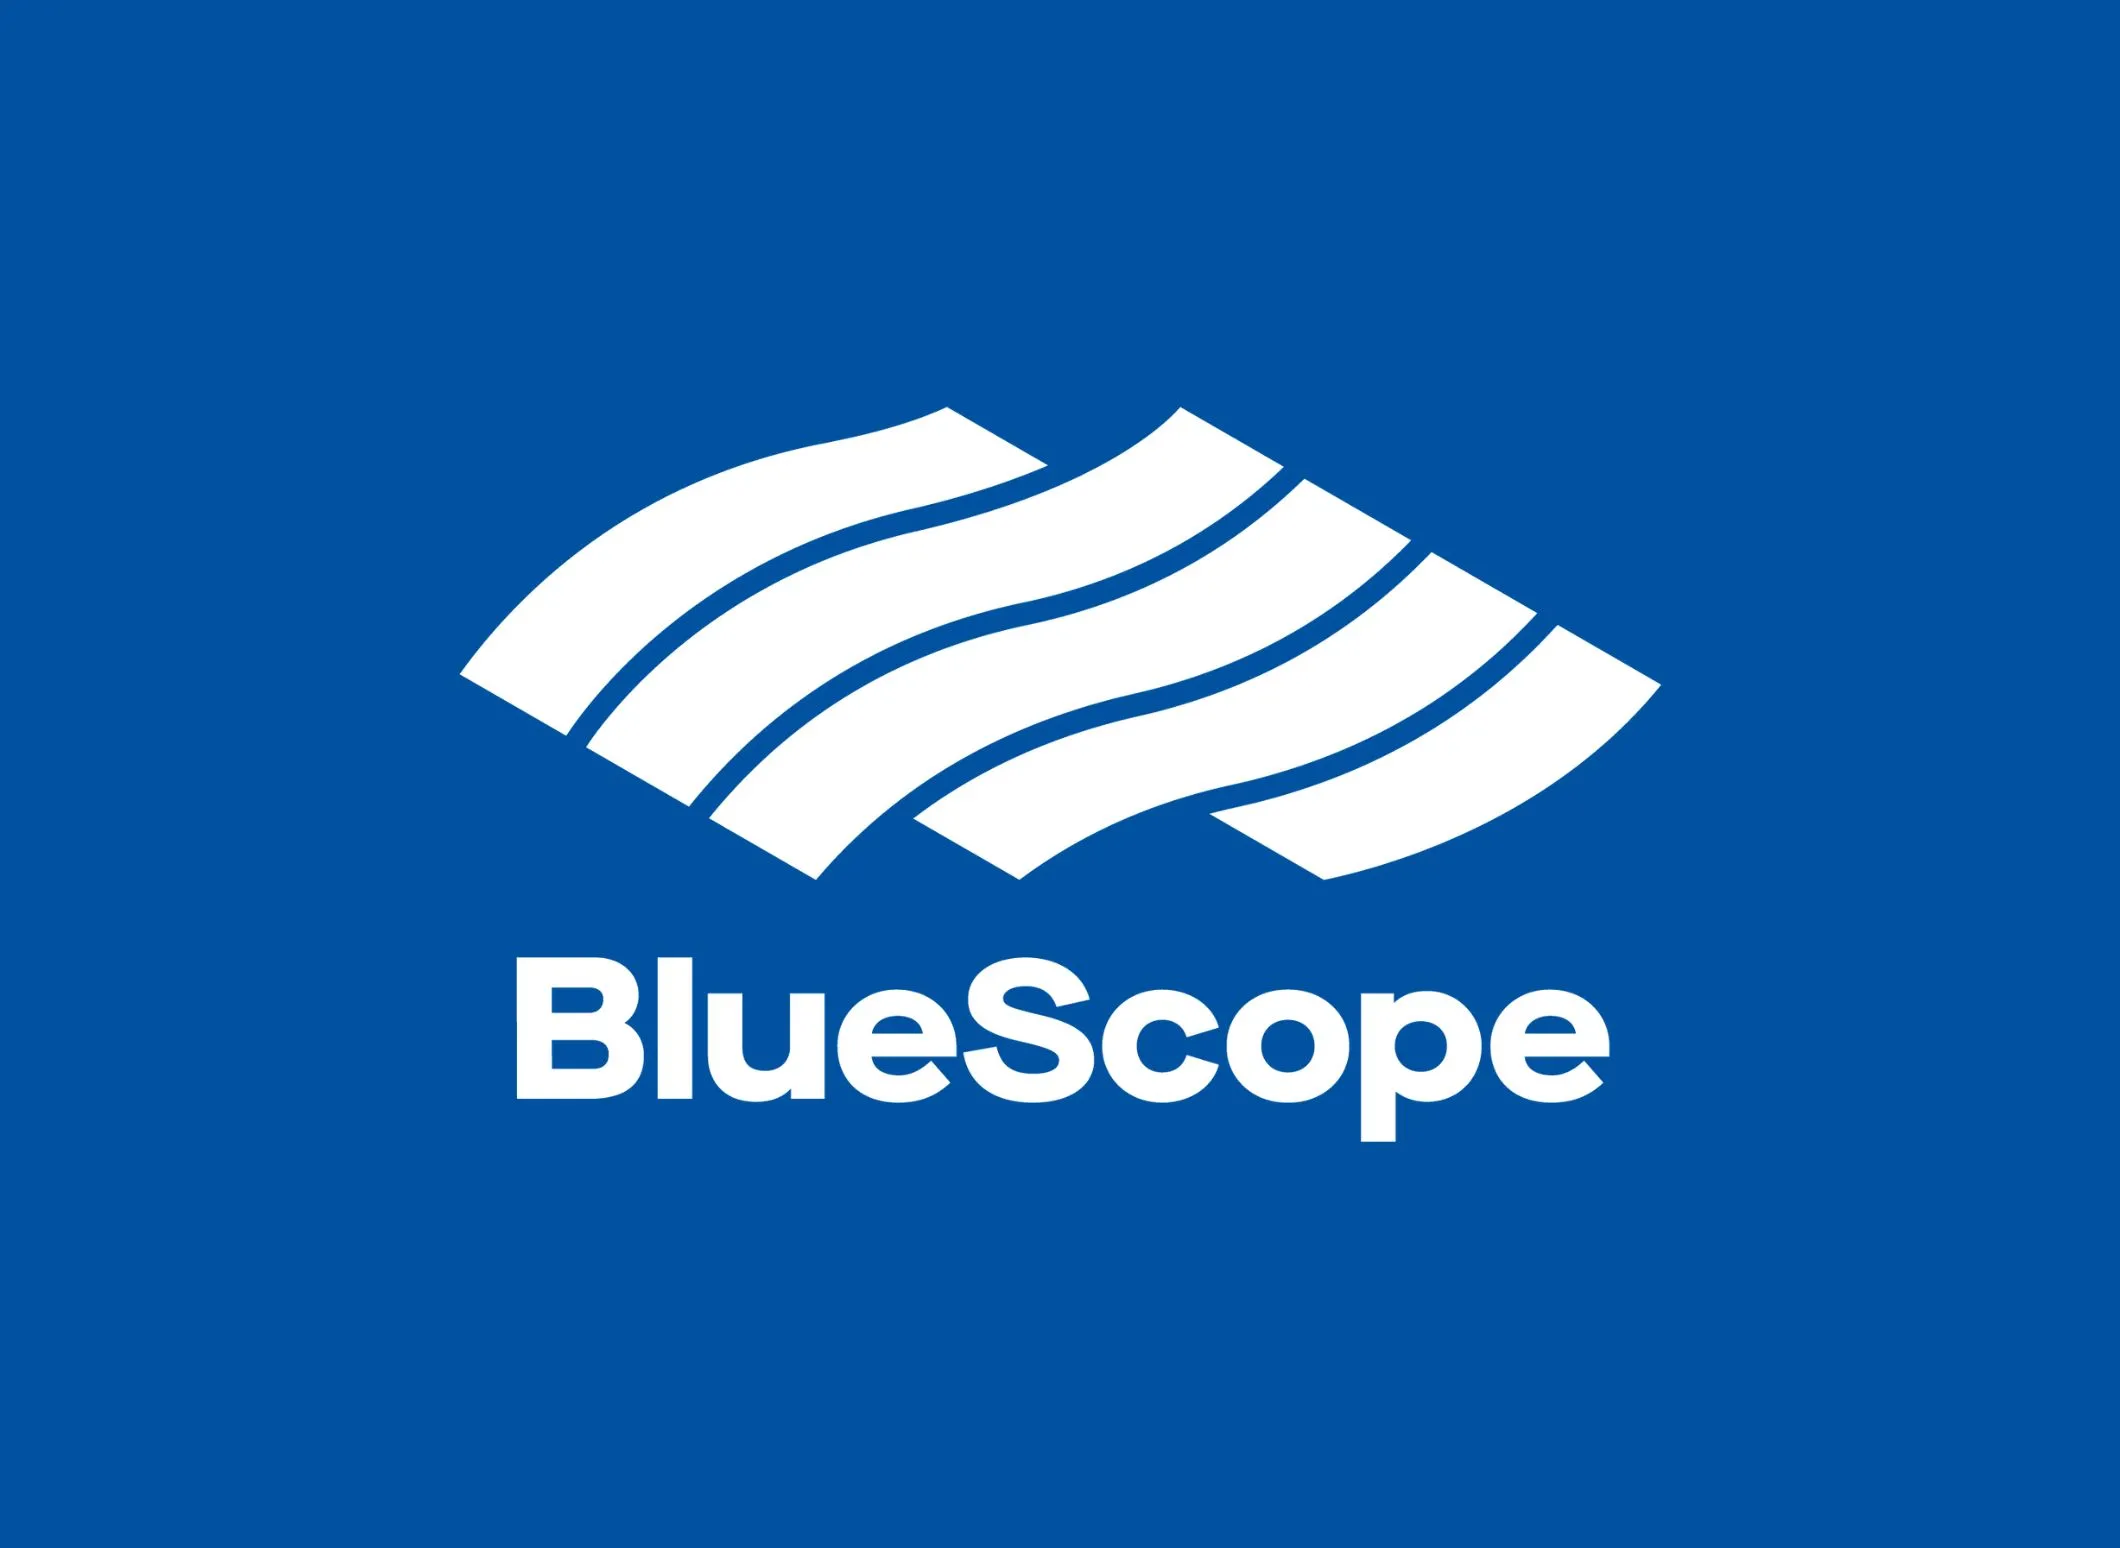 White BlueScope logo on blue background